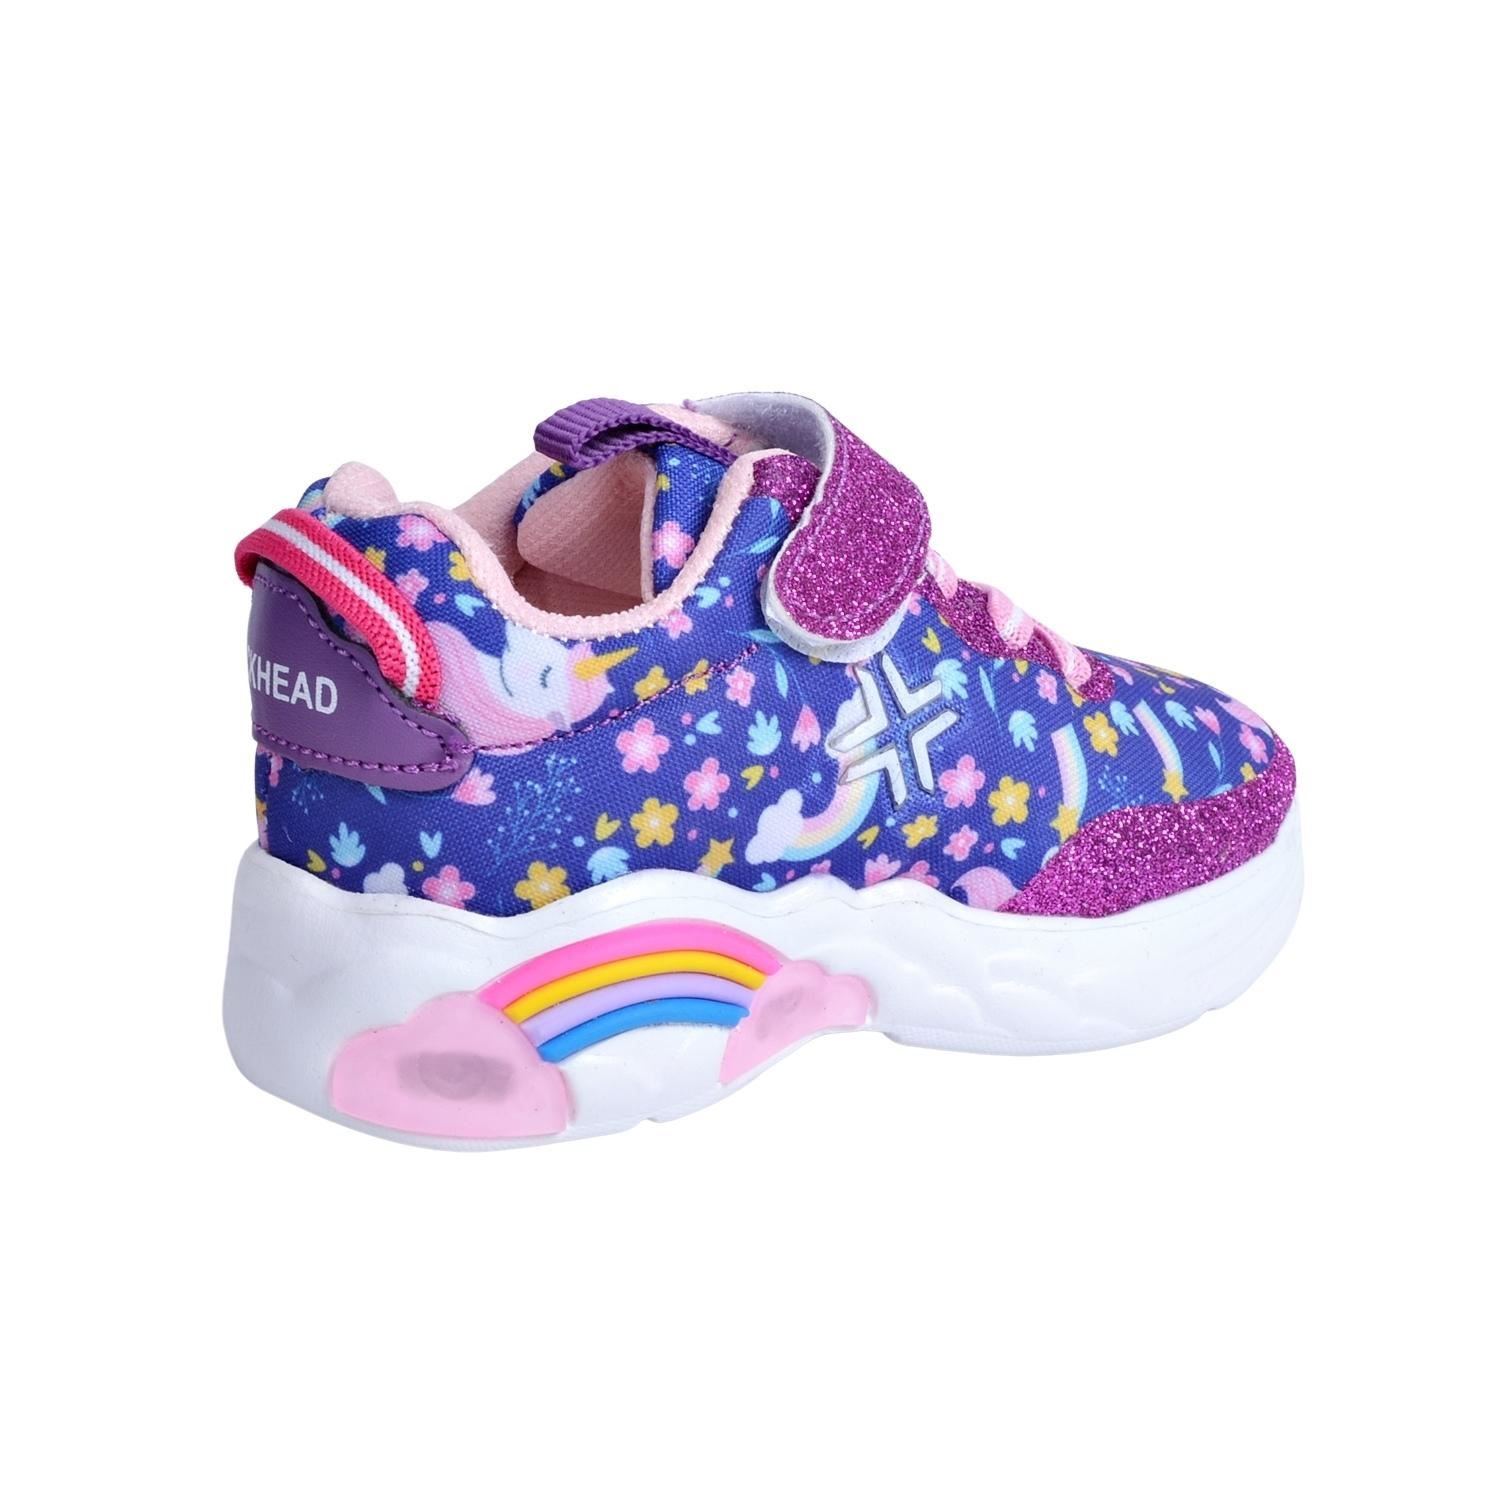 Buckhead 4122 Rainbow Işıklı Çocuk Spor Ayakkabı